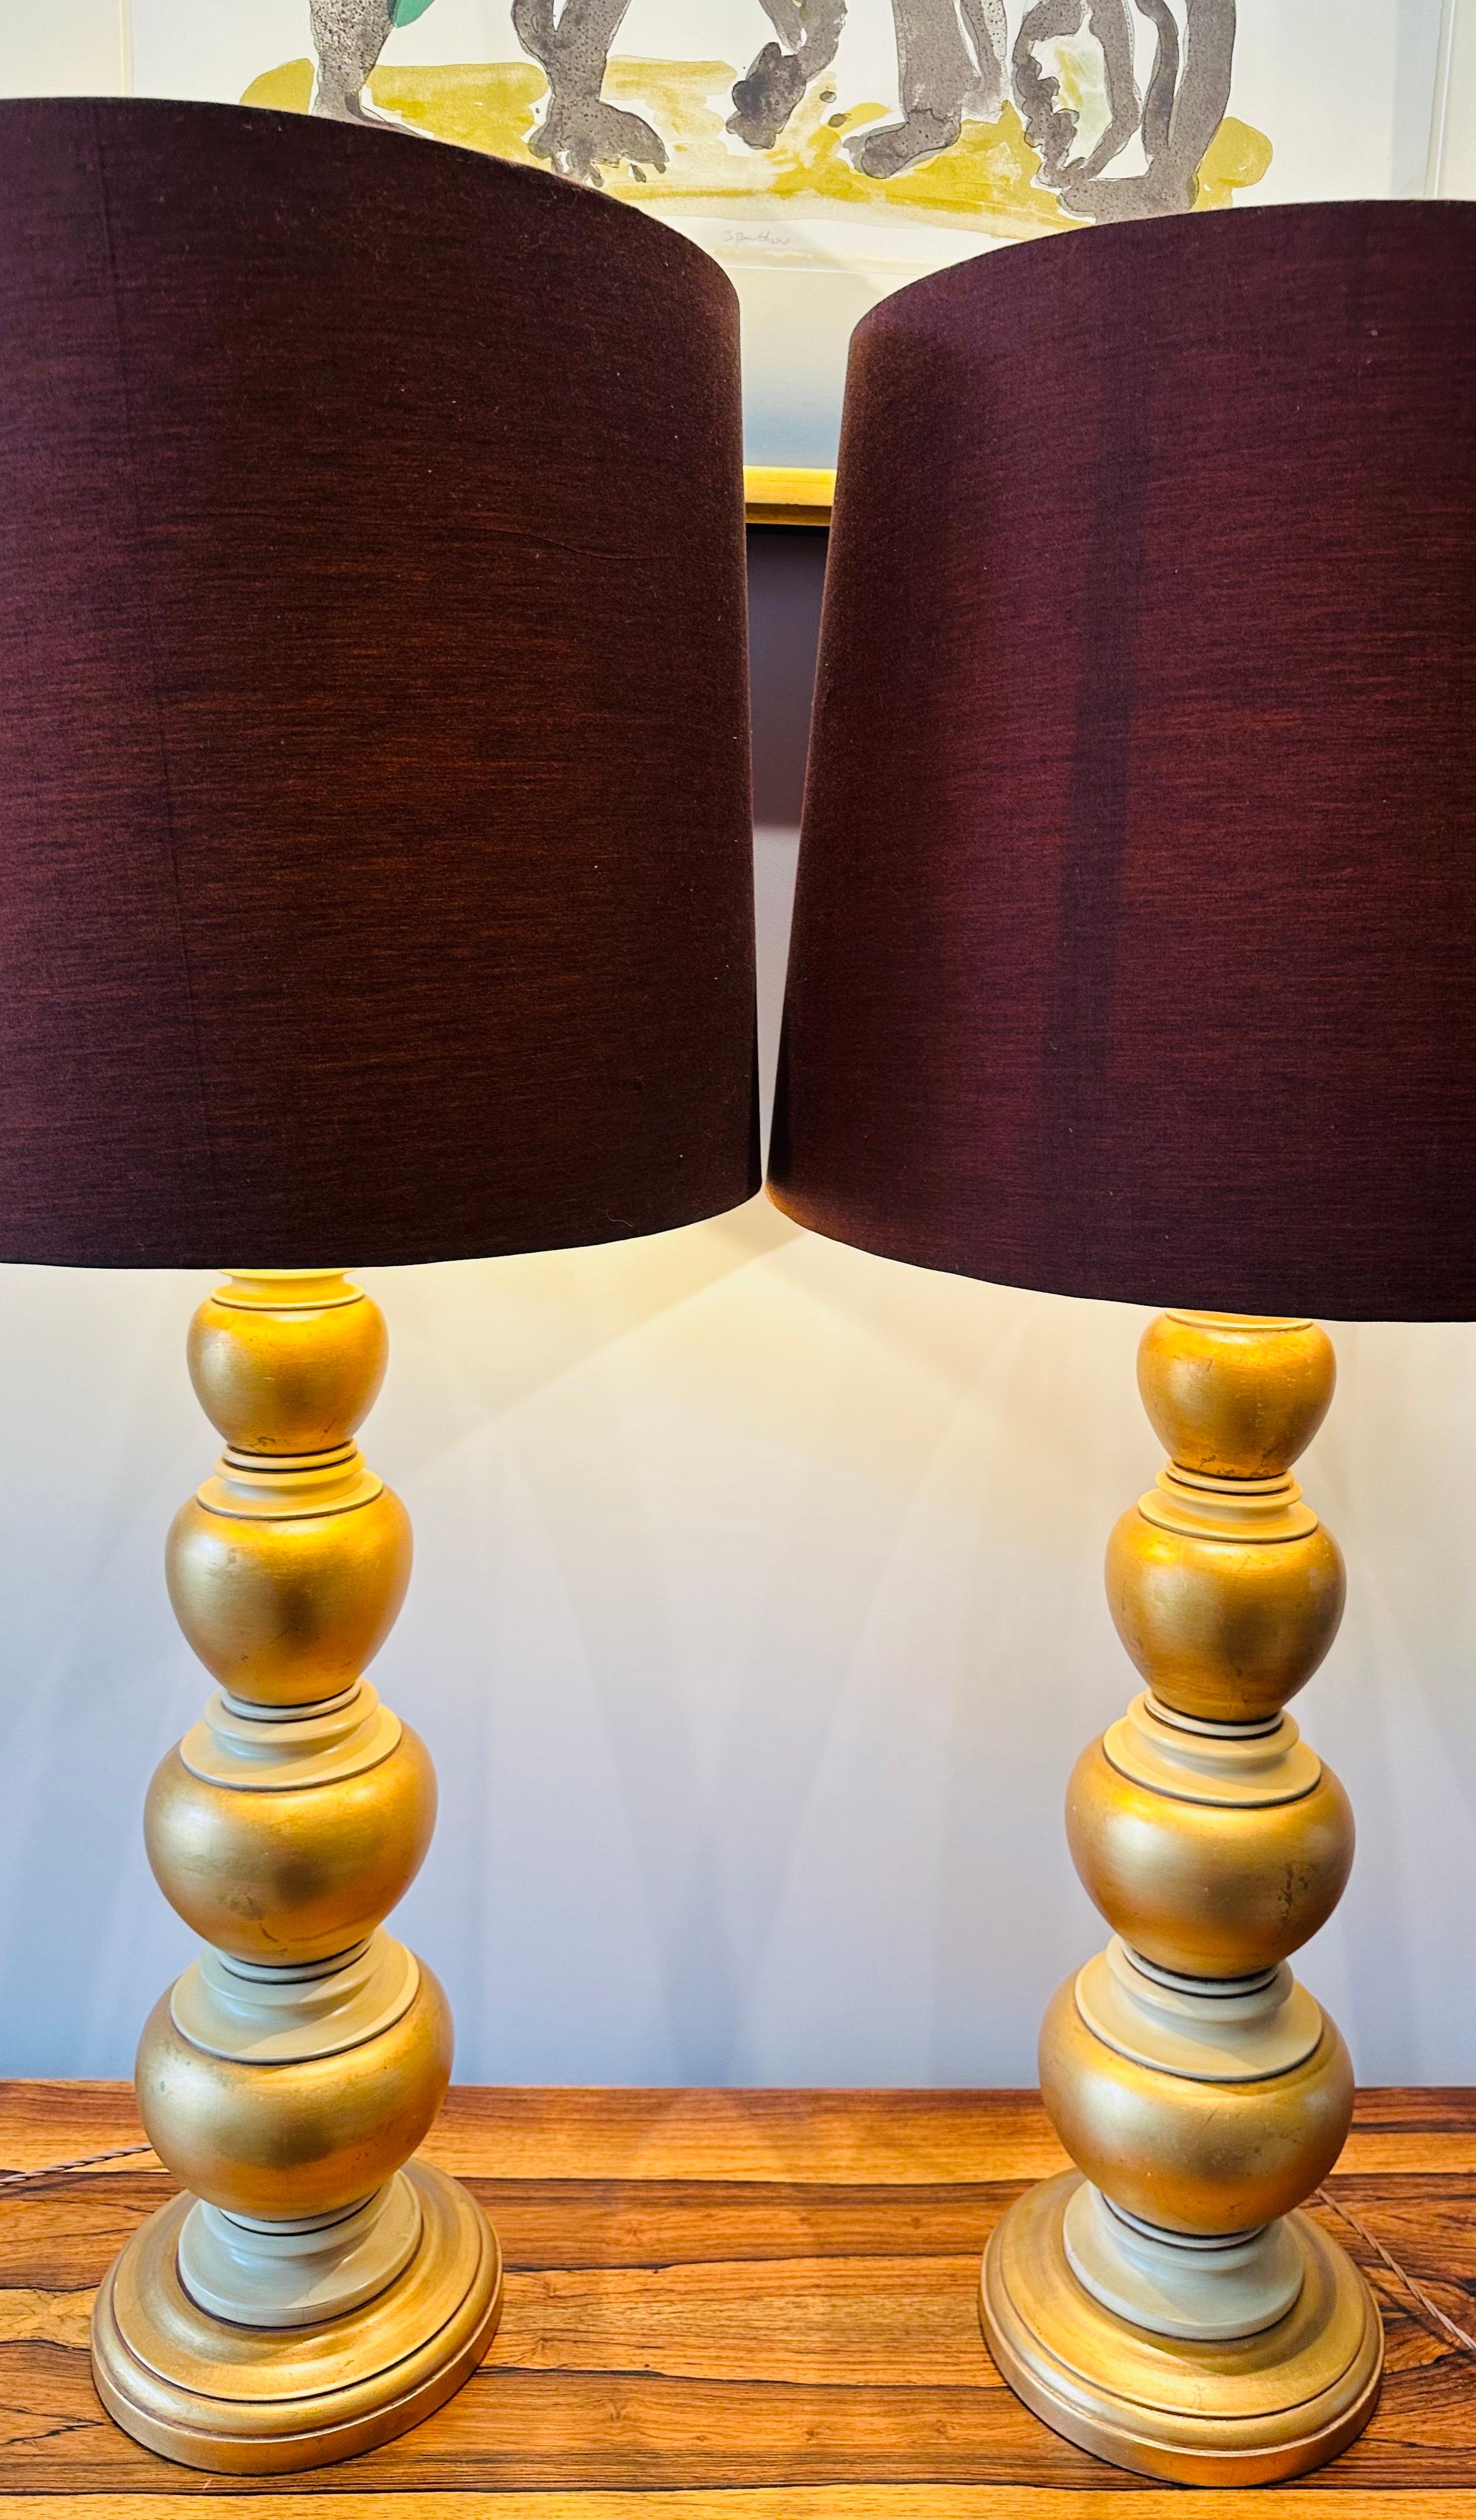 Paire de lampes de table Frederick Cooper des années 1950, peintes à la feuille d'or et à la crème, souvent confondues, dans le style de James Mont. Les lampes sont fabriquées en bois tourné lourd qui a été sculpté pour former quatre boules